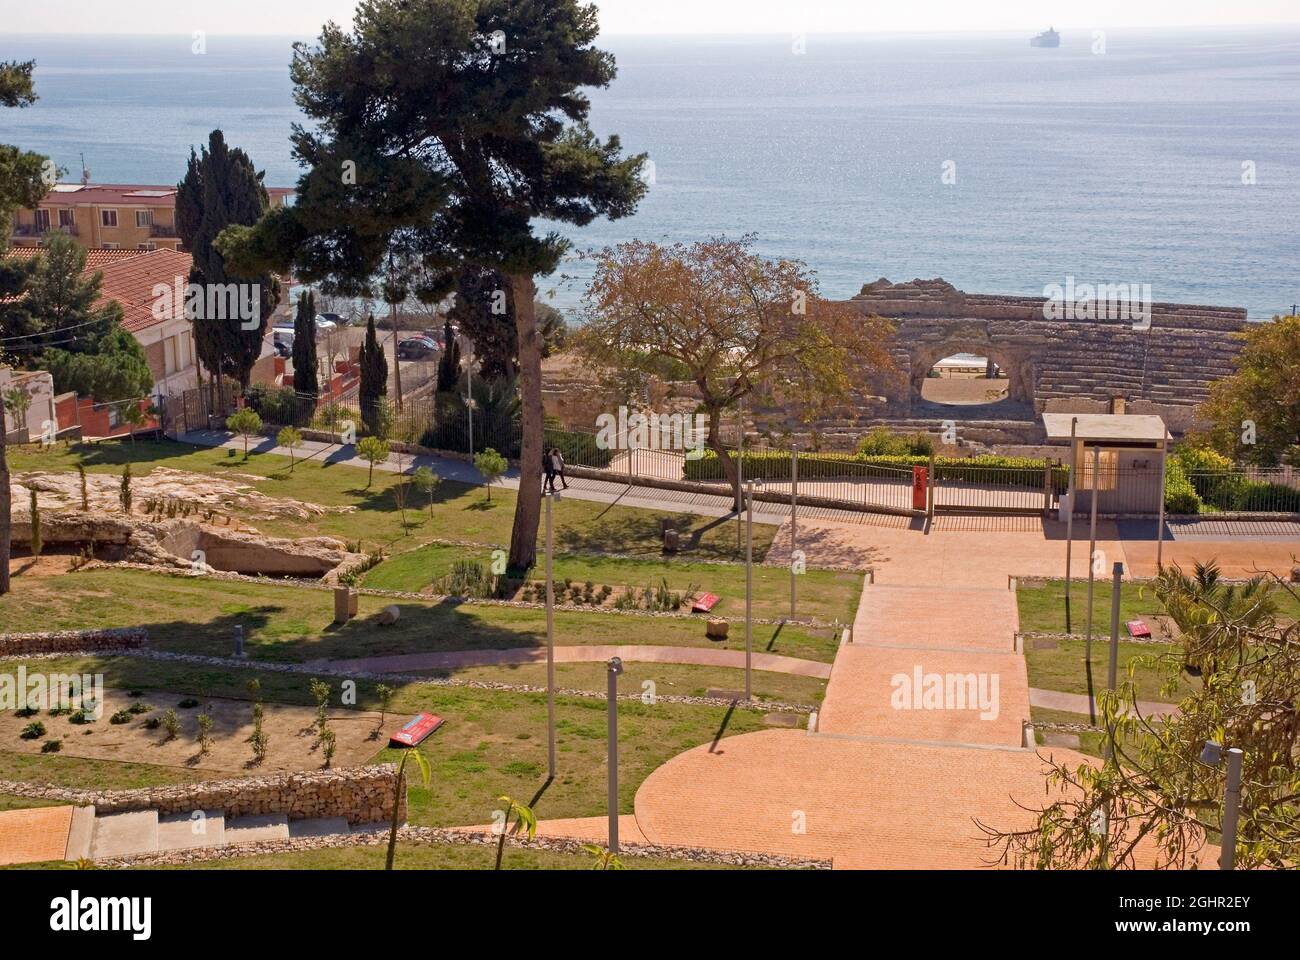 Tarragona in Catalonia: the Parc de l'Amfiteatro and the Roman amphitheatre Stock Photo